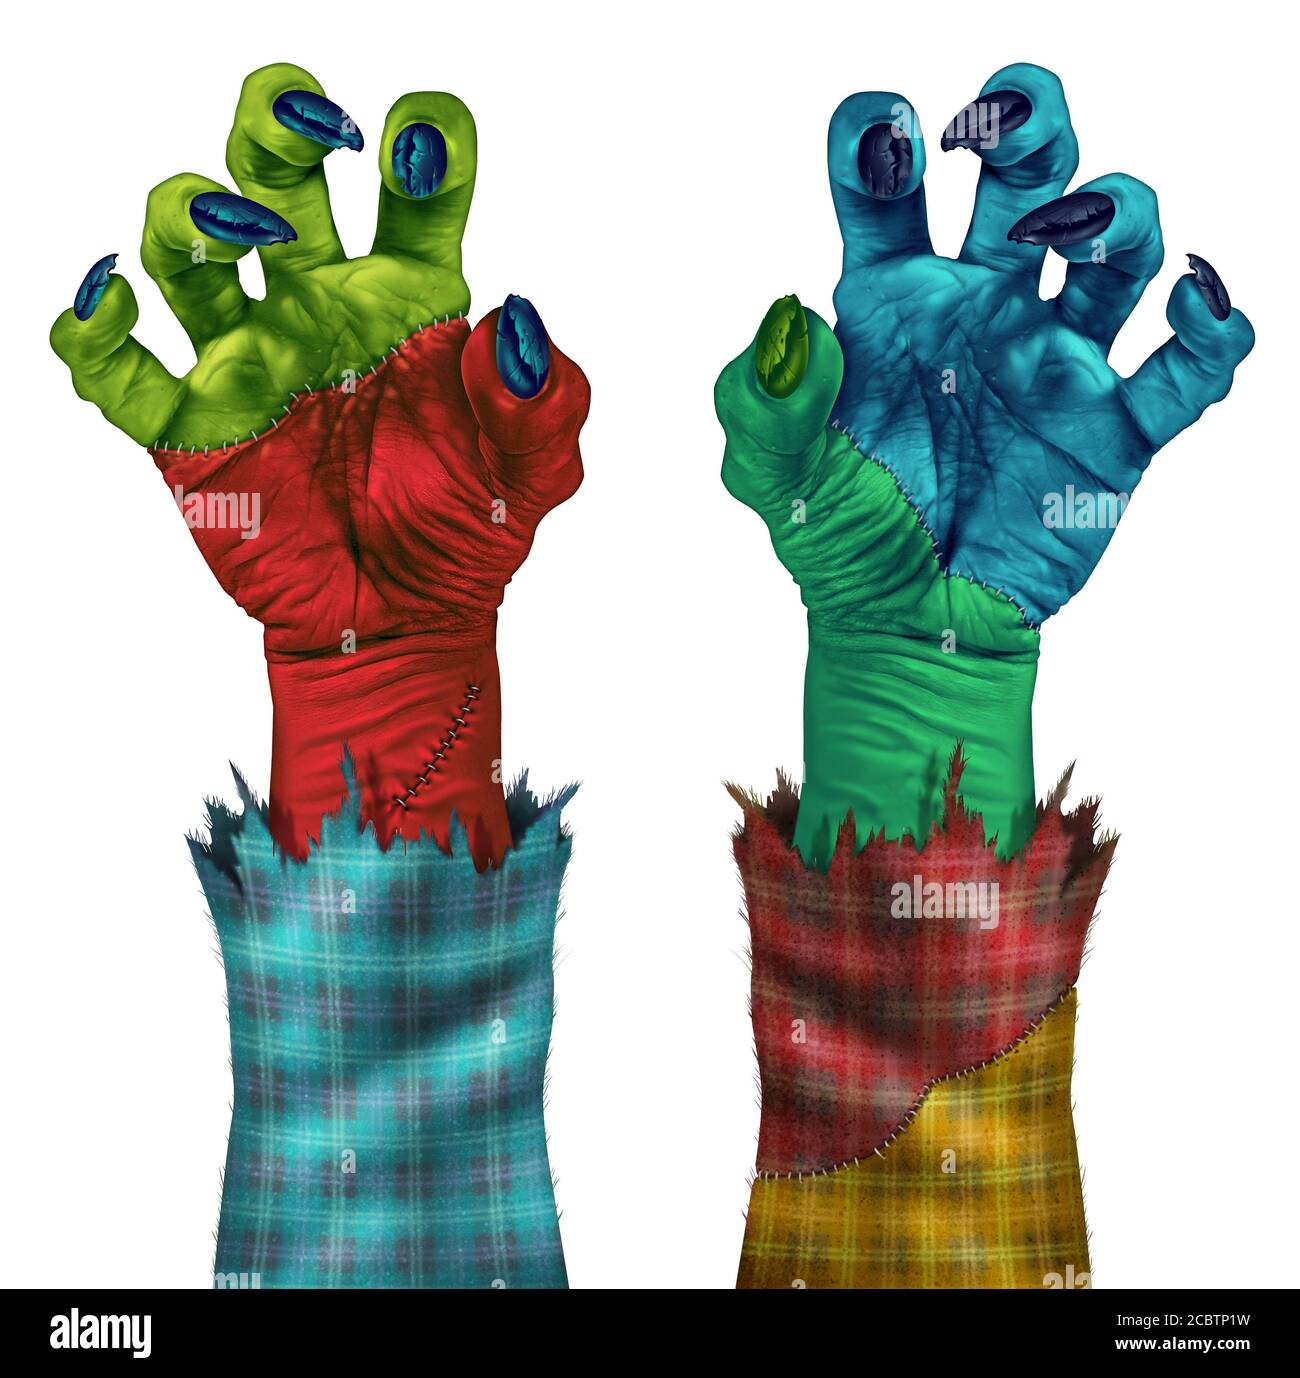 Le mani creepy di Zombie che raggiungono per afferrare come una mano del mostro verde come umana con le unghie affilate e le maglie che rappresentano il creep di Halloween. Foto Stock